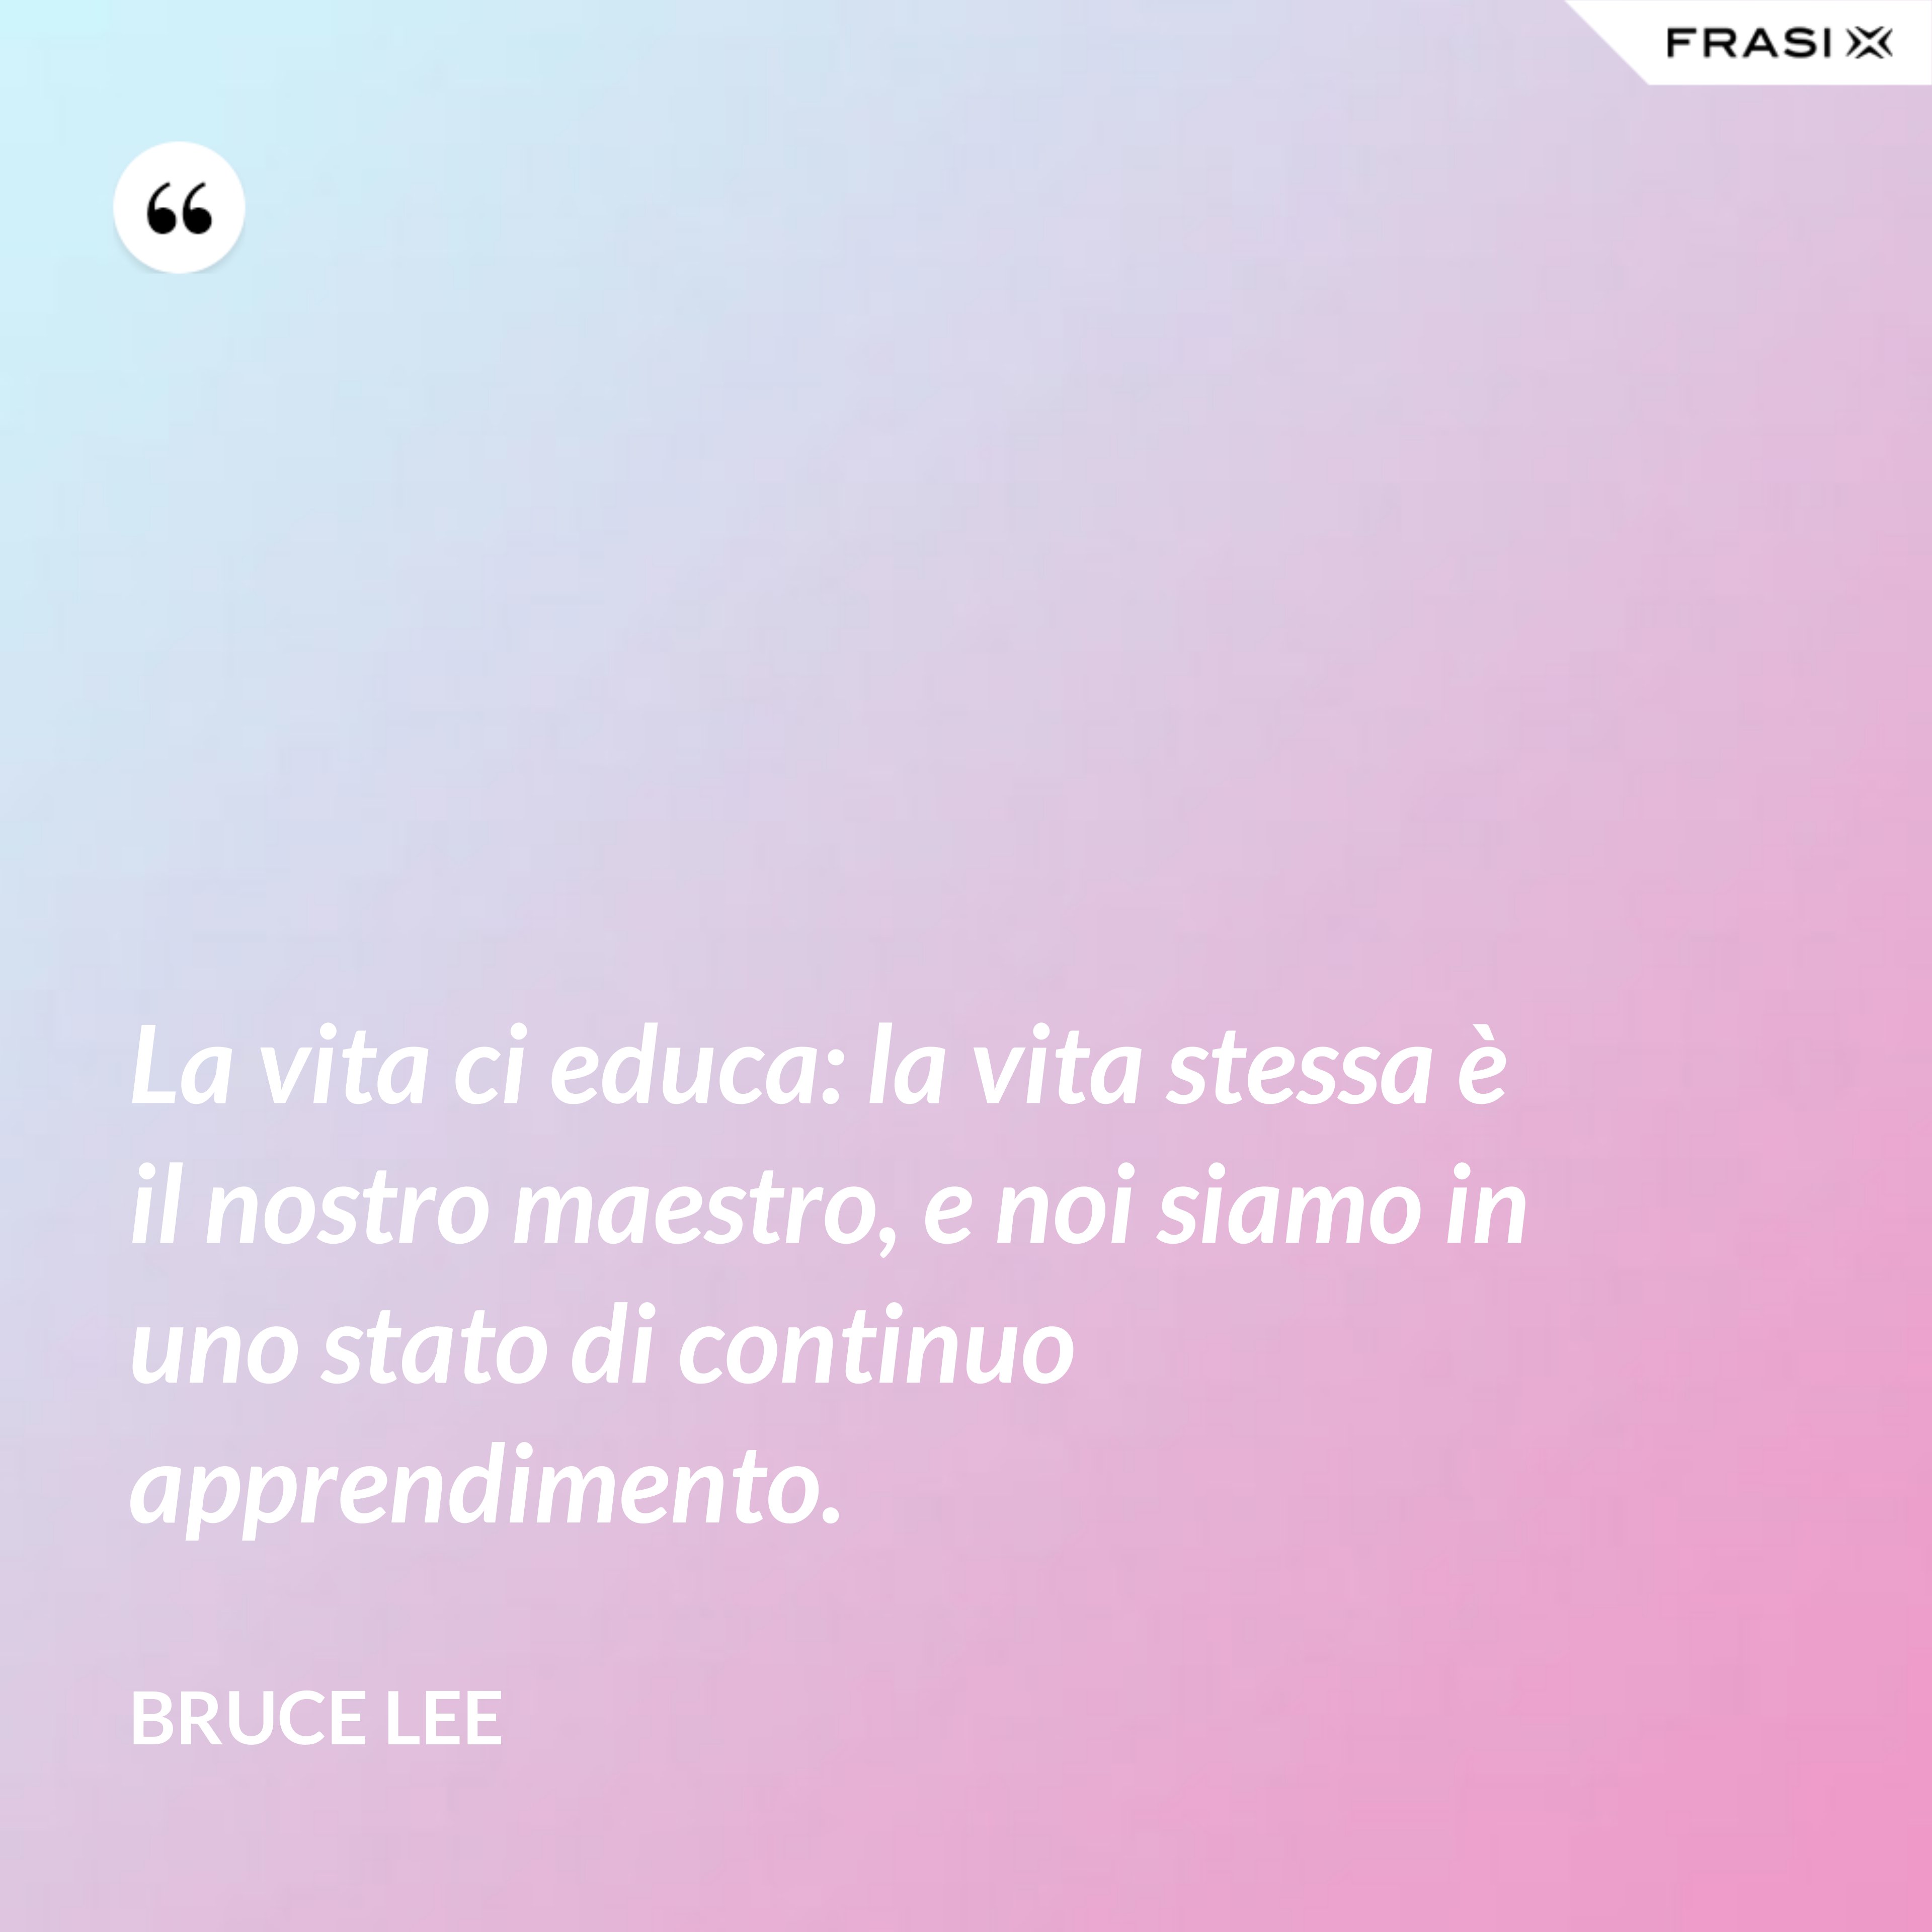 La vita ci educa: la vita stessa è il nostro maestro, e noi siamo in uno stato di continuo apprendimento. - Bruce Lee